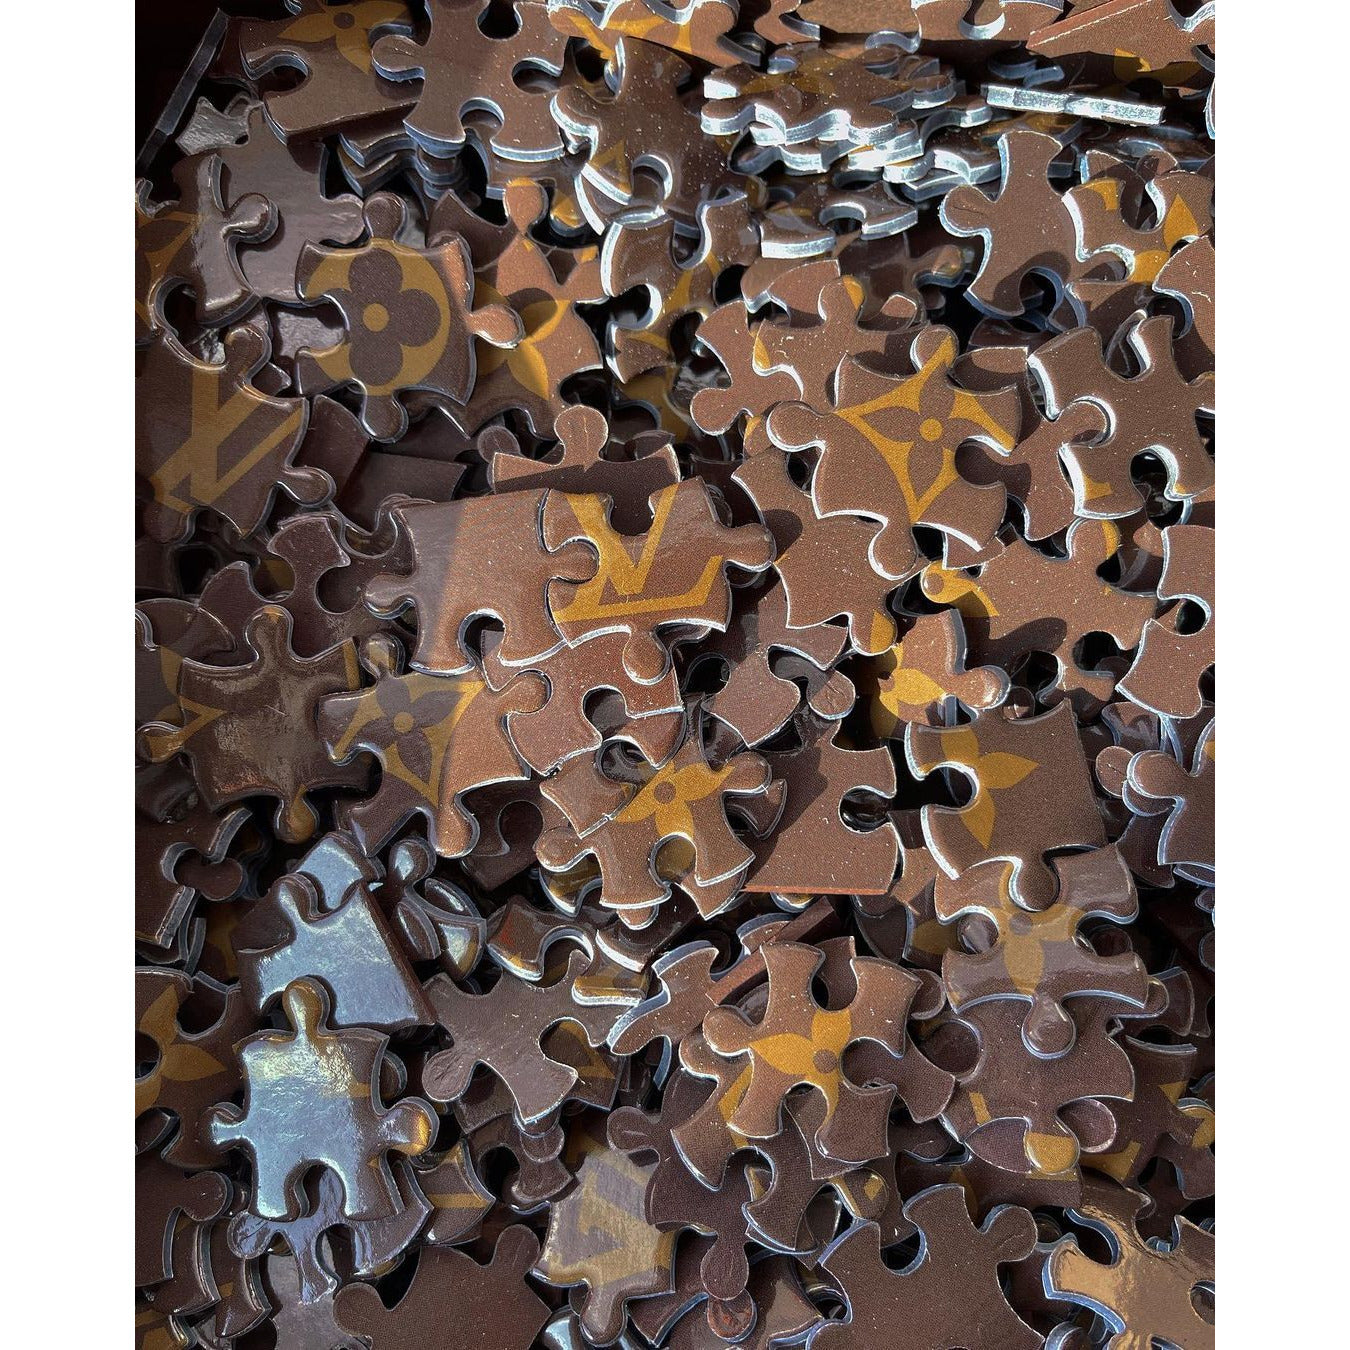 Louis Vuitton Supreme Jigsaw Puzzles for Sale